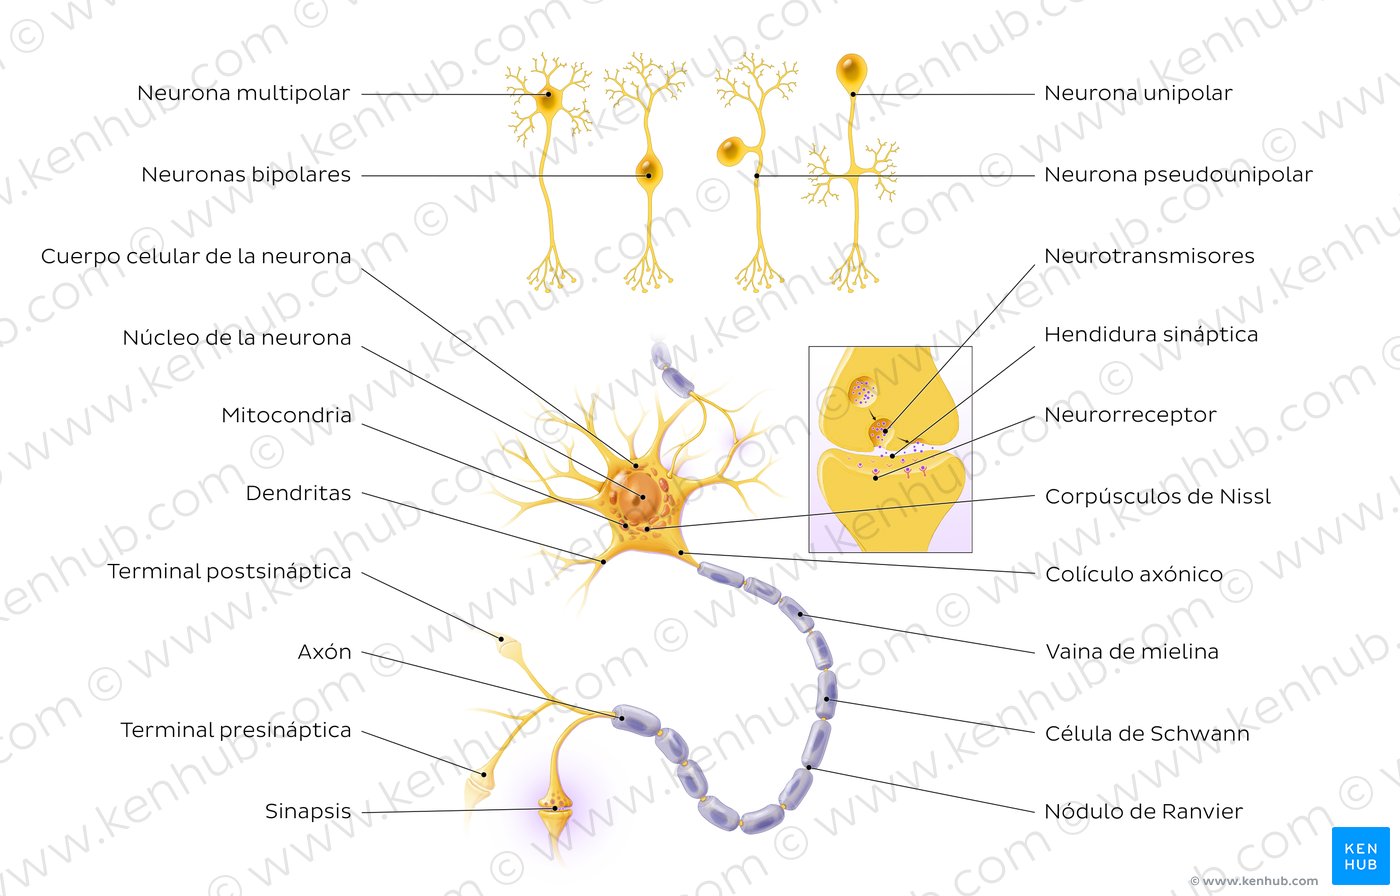 Histología de la neurona: tipos, función | Kenhub